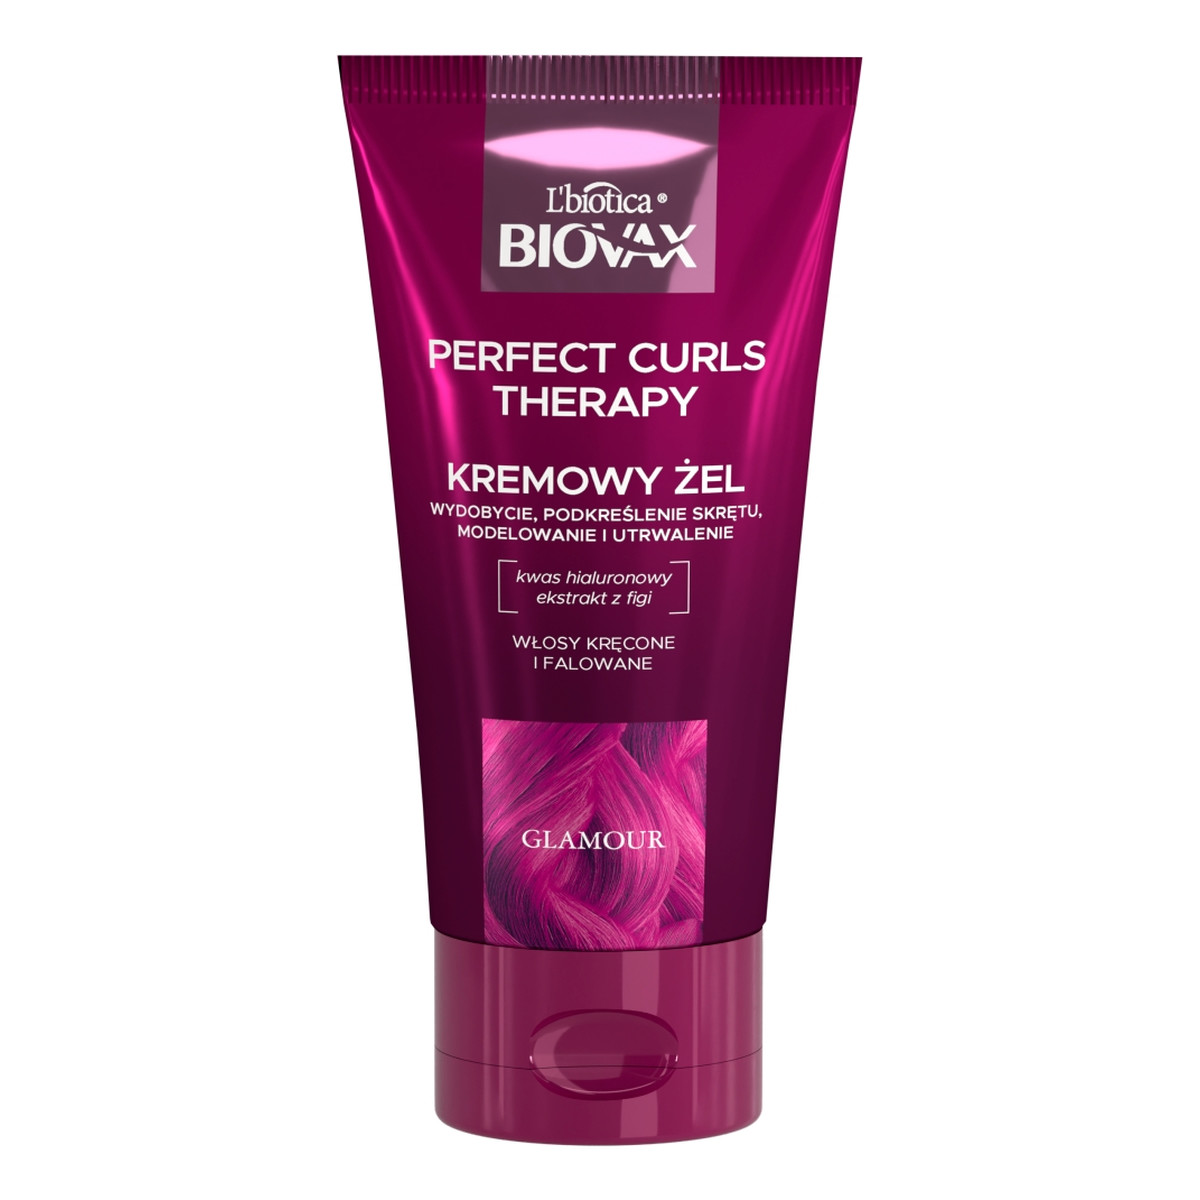 Biovax Glamour Perfect Curls Therapy nawilżający Żel do stylizacji fal i loków 150ml